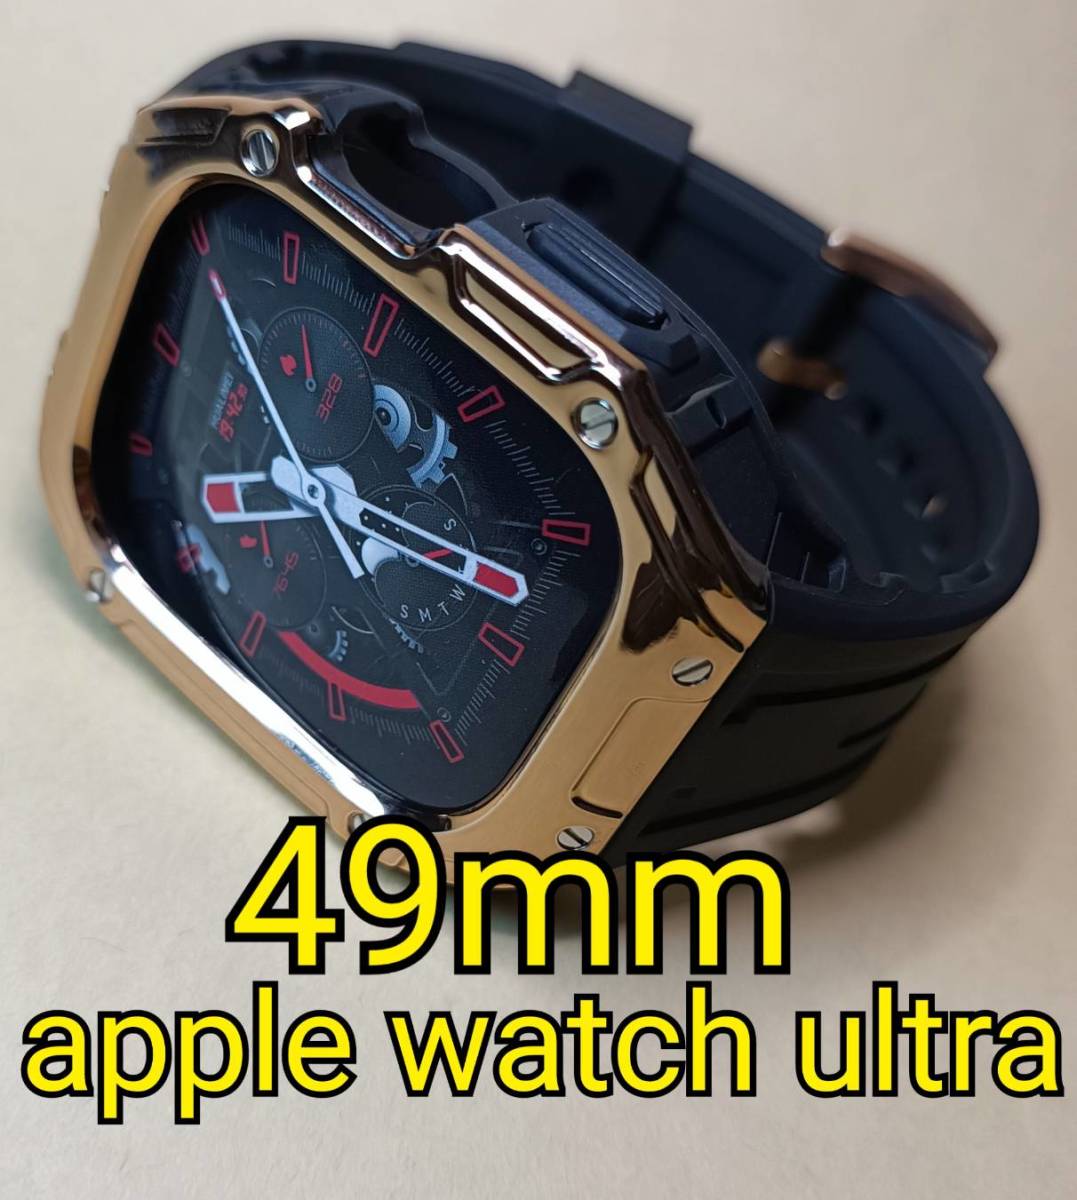 RGx黒 ラバー 49mm apple watch ultra アップルウォッチウルトラ カバー ケース カスタム golden concept ゴールデンコンセプト 好きに _画像1